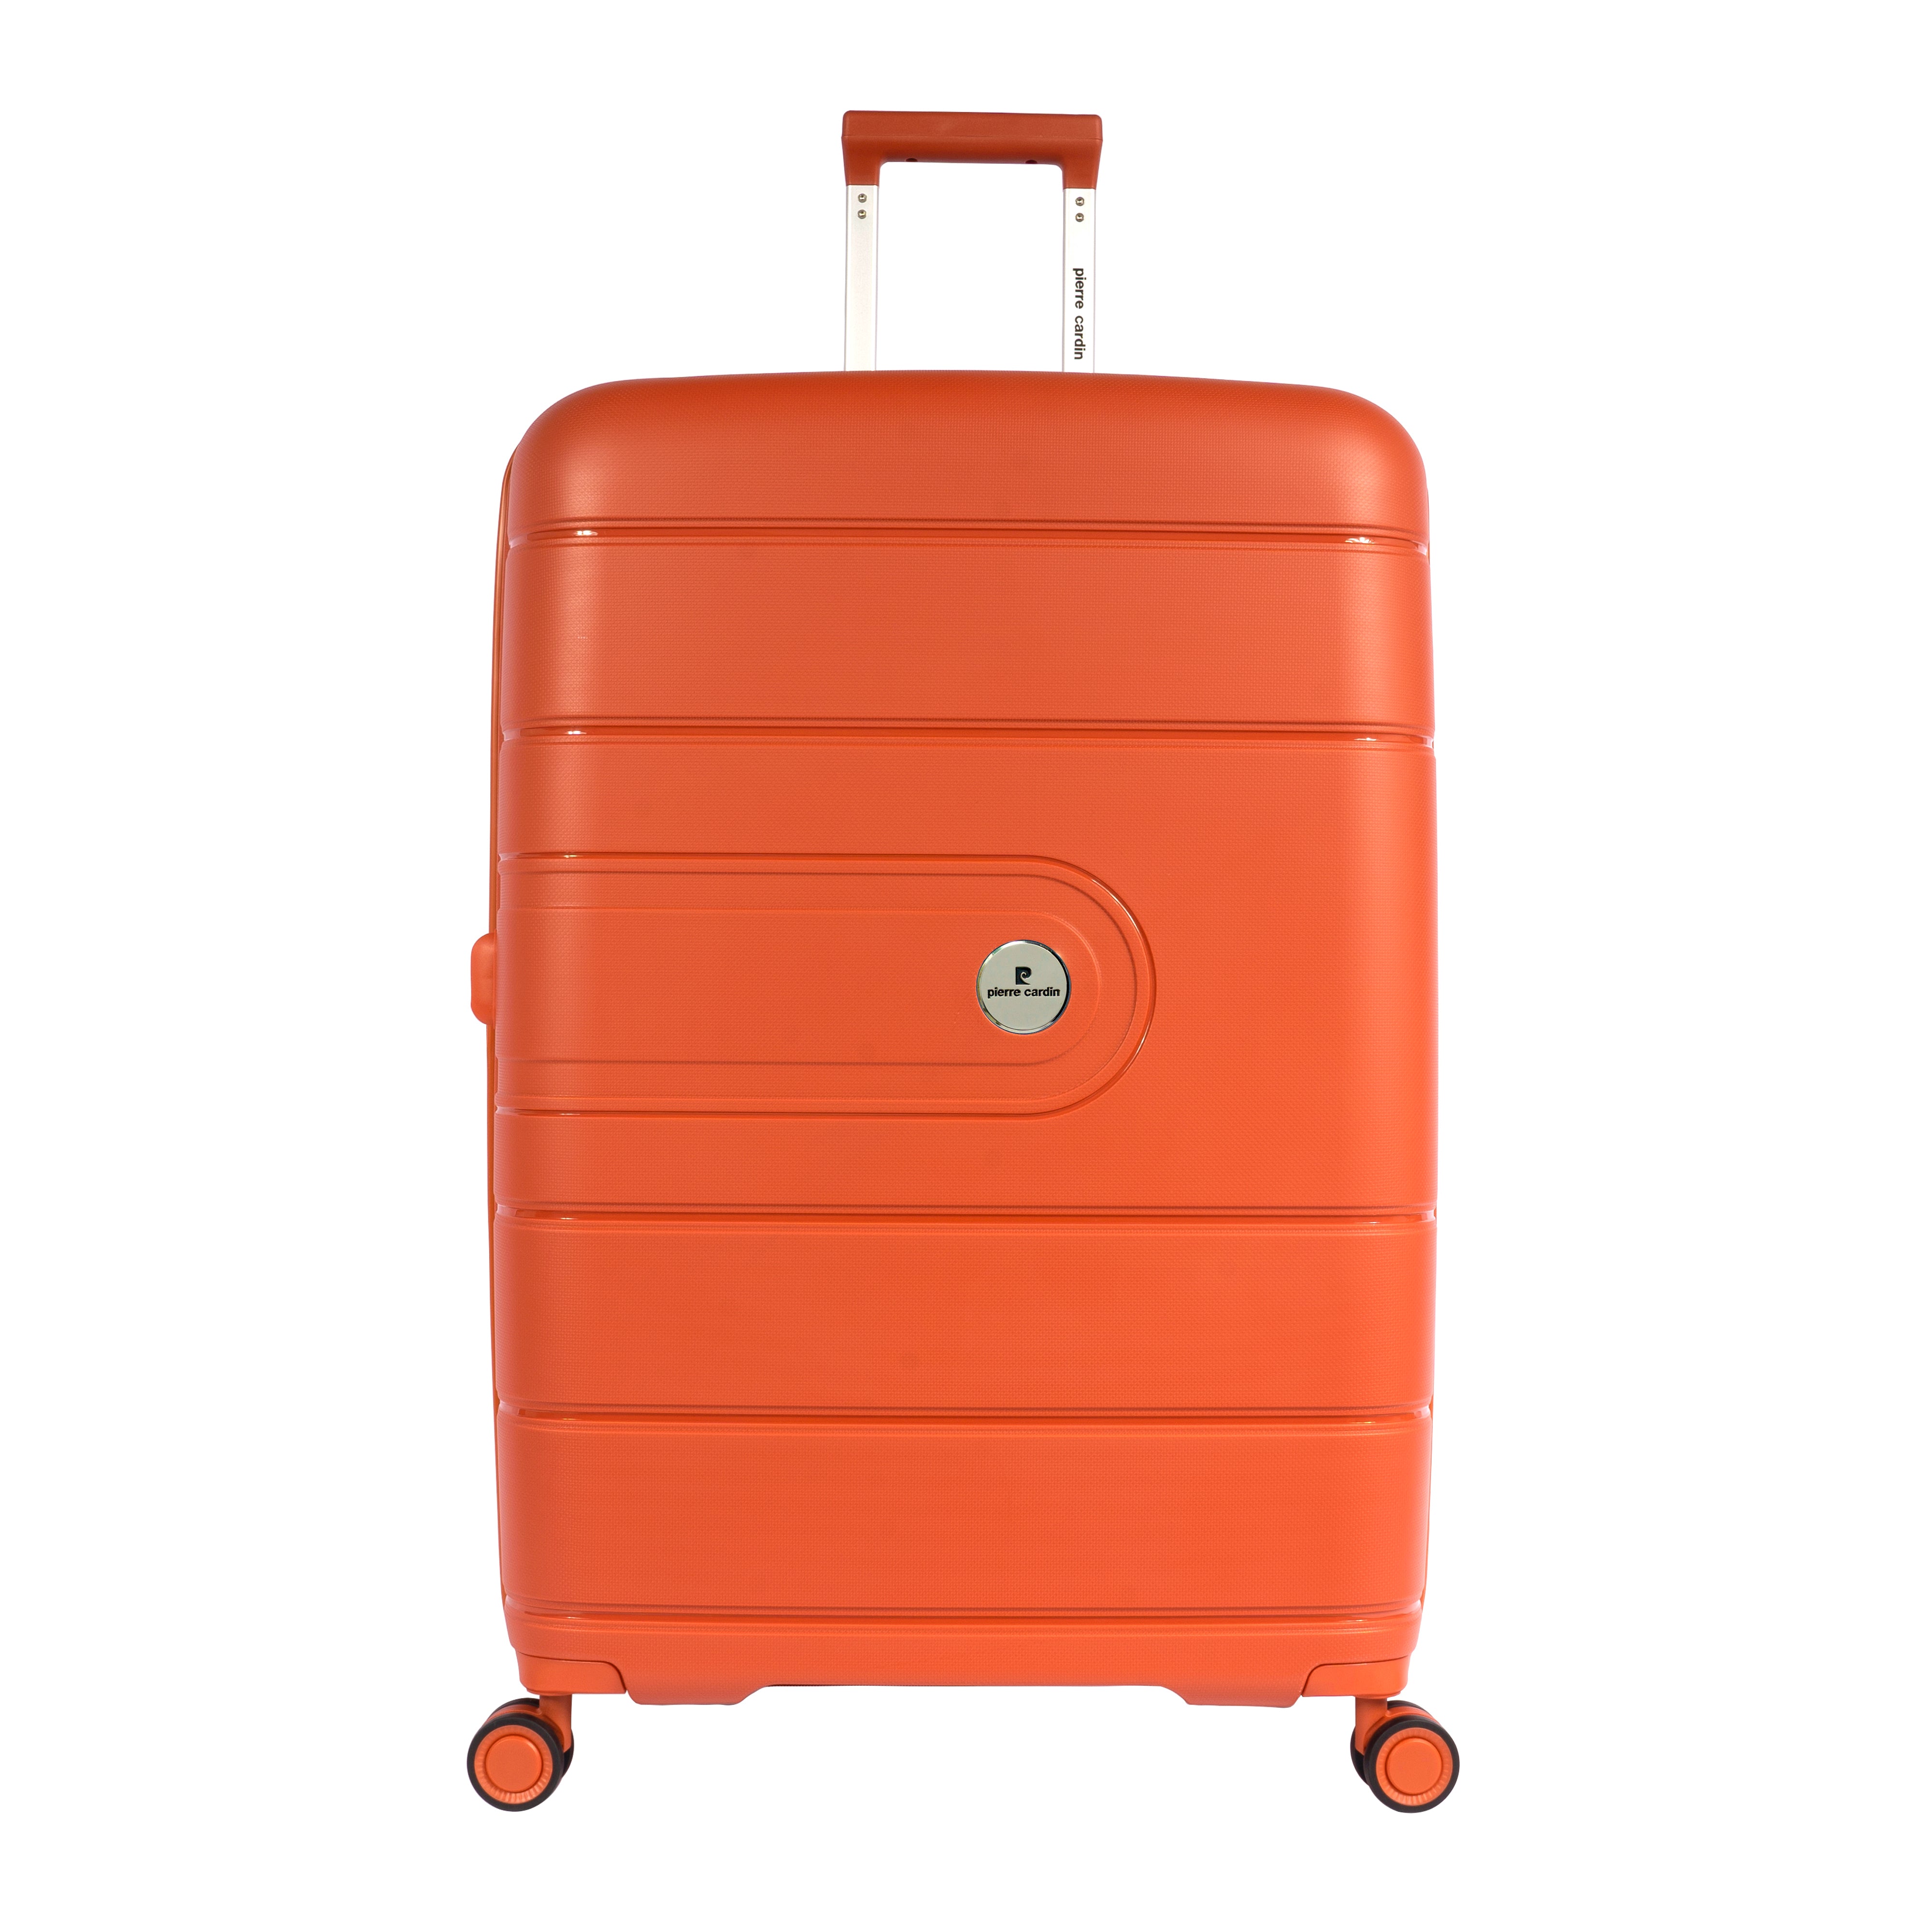 Pierre Cardin Large Hardcase Trolley in Orange